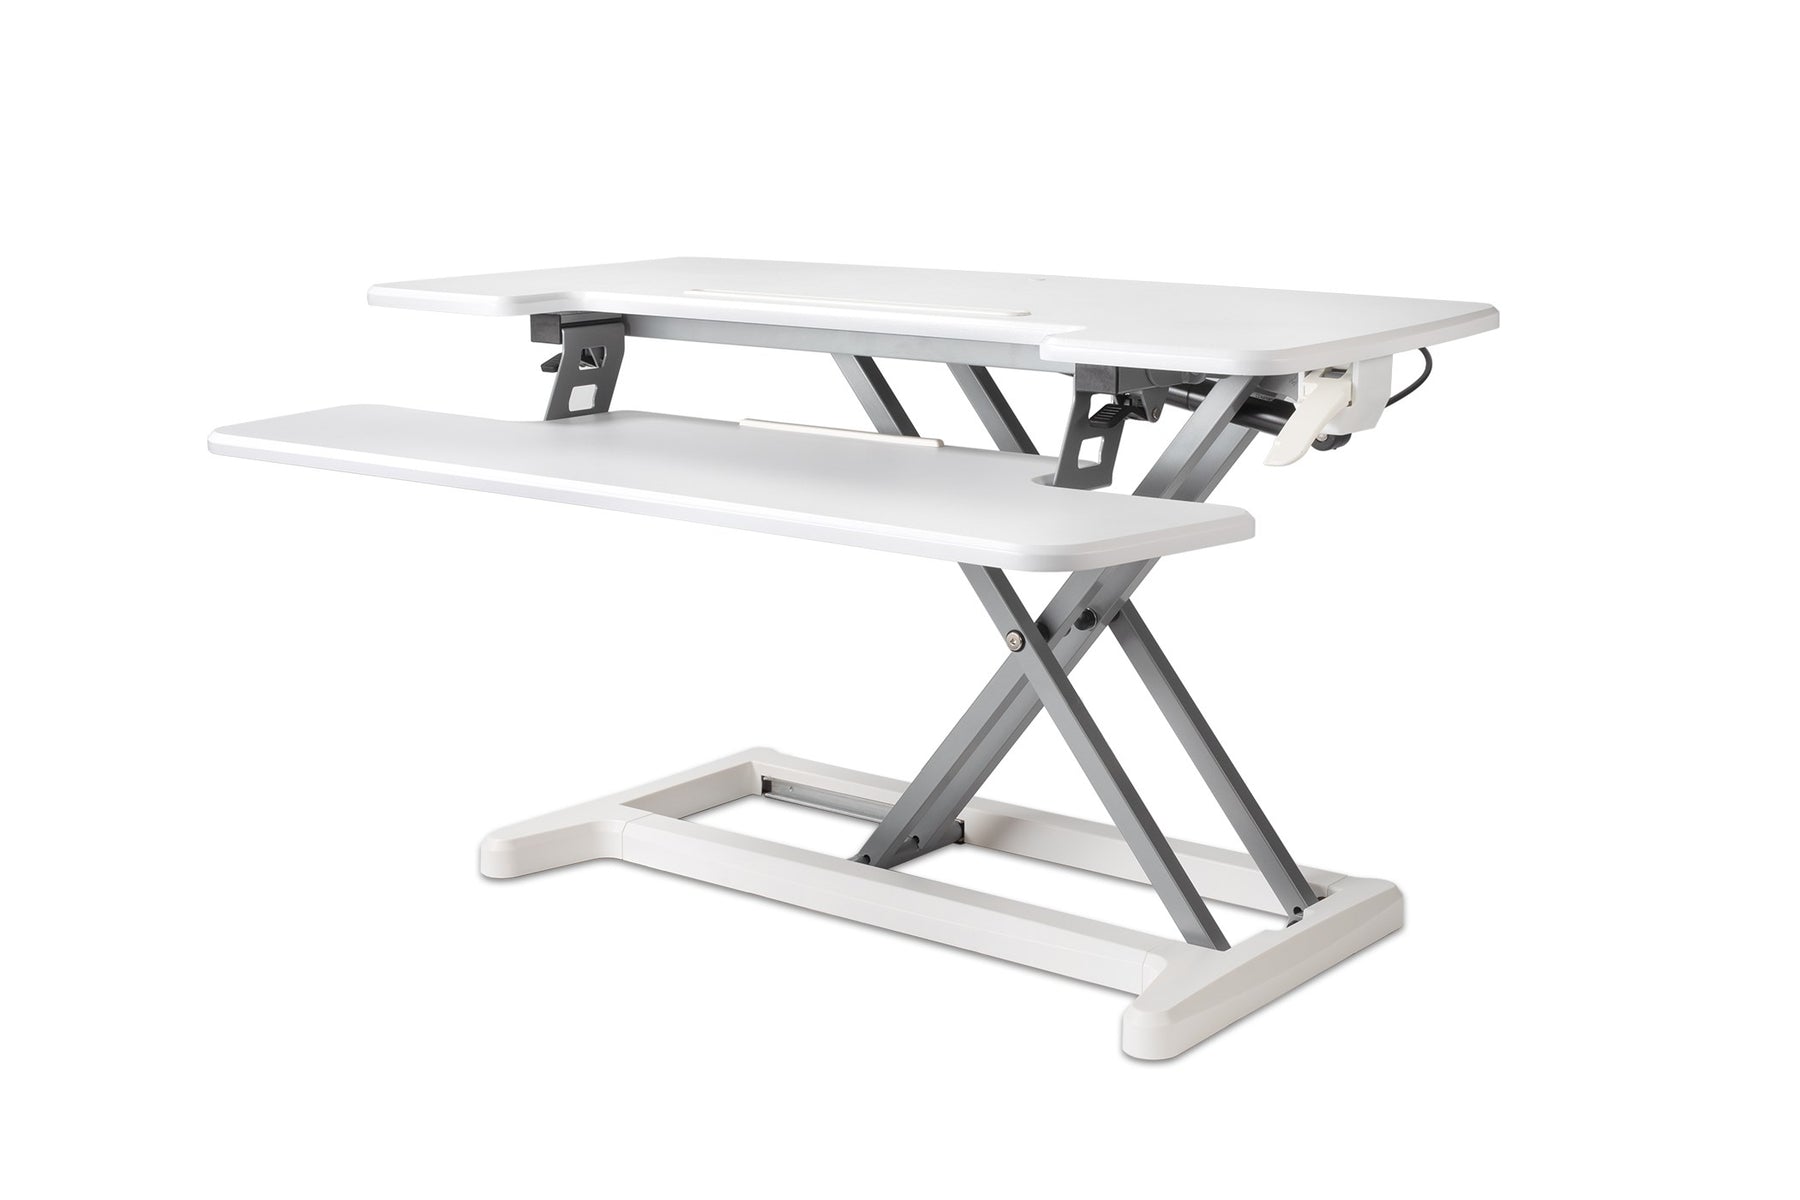 Adjustable Sit-Stand Desk Riser 2, Black